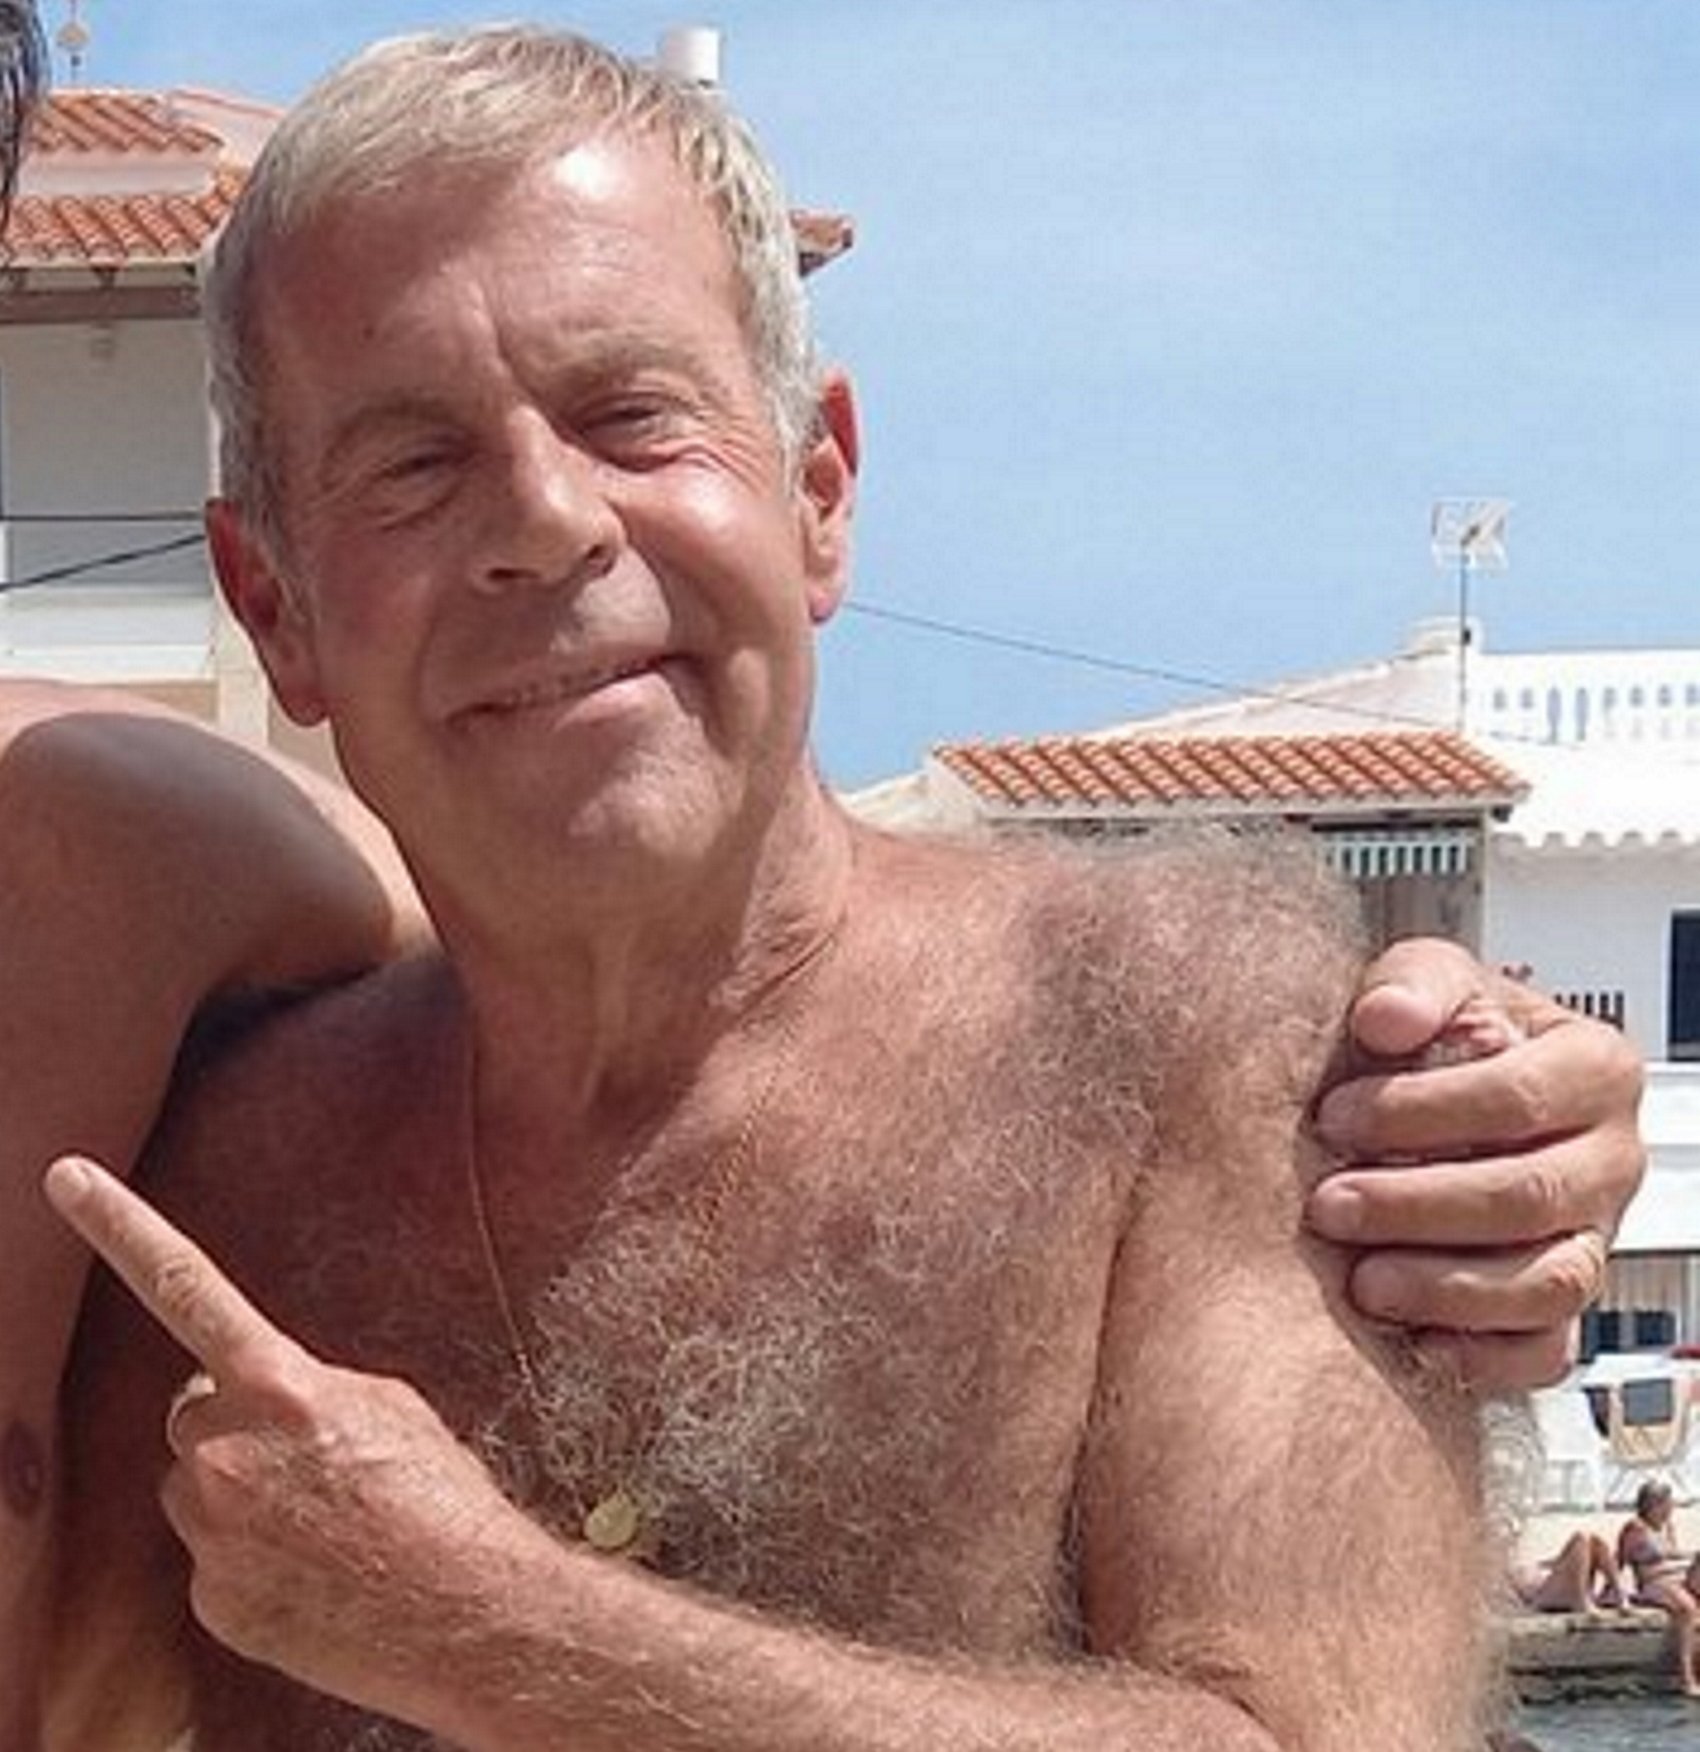 Tomás Guasch en la playa abrazado a famoso exjugador del Barça: "gente normal"